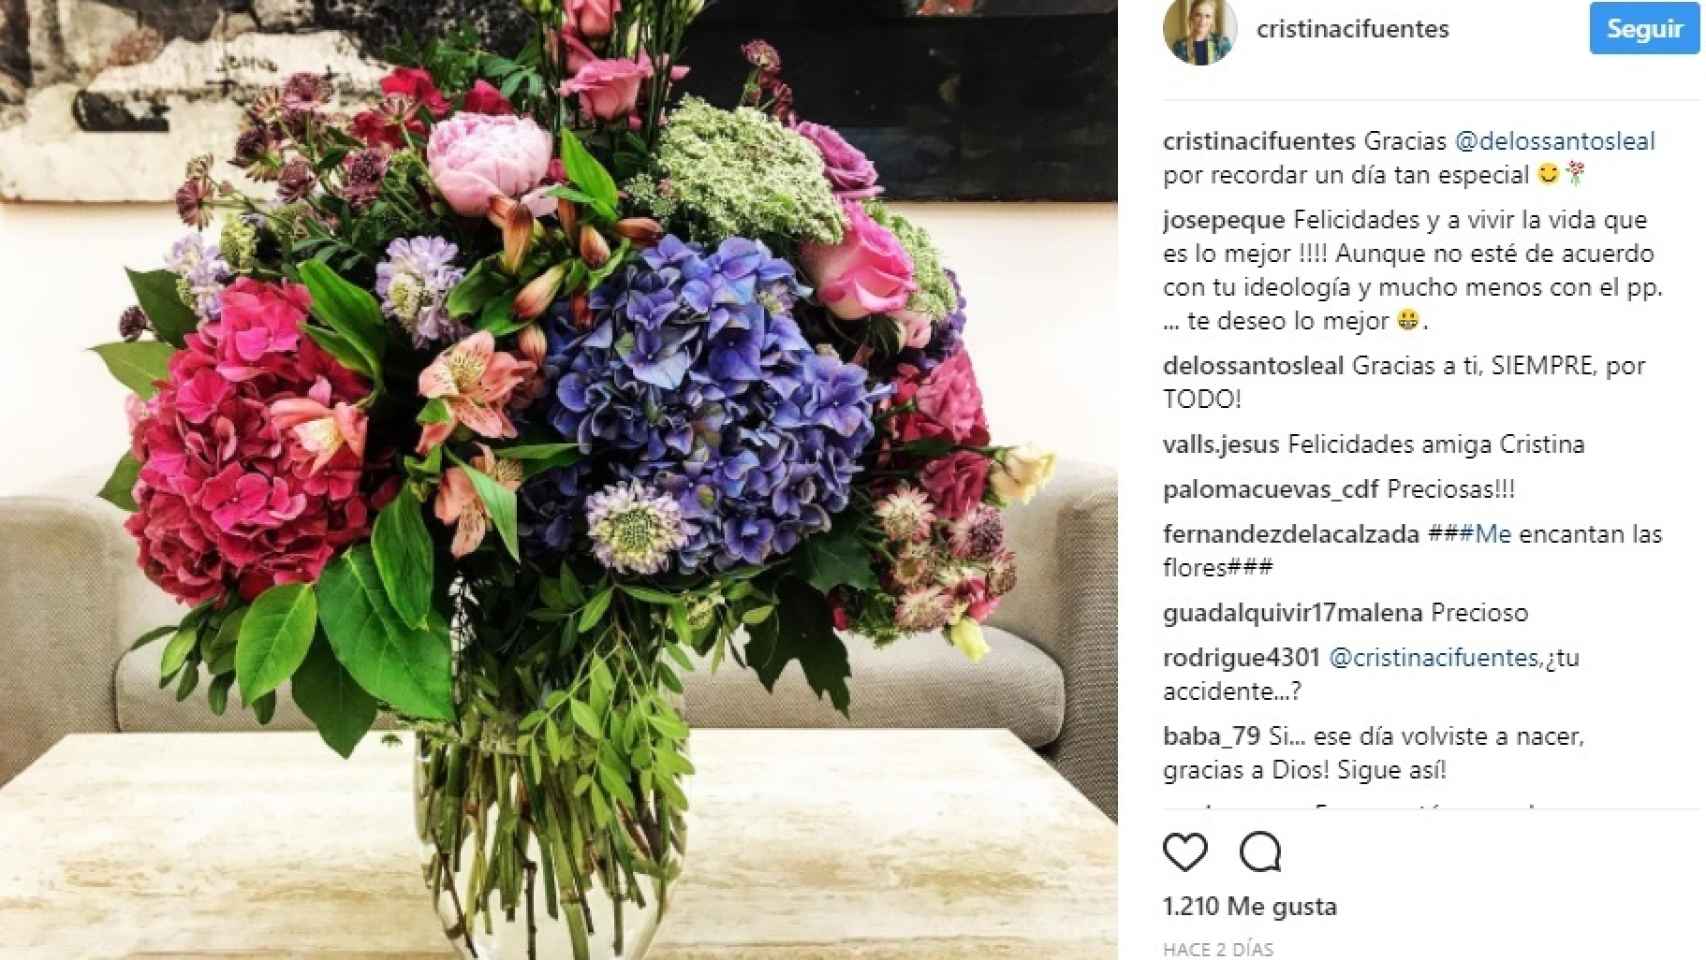 El mensaje de Cristina Cifuentes a Jaime de los Santos en su Instagram